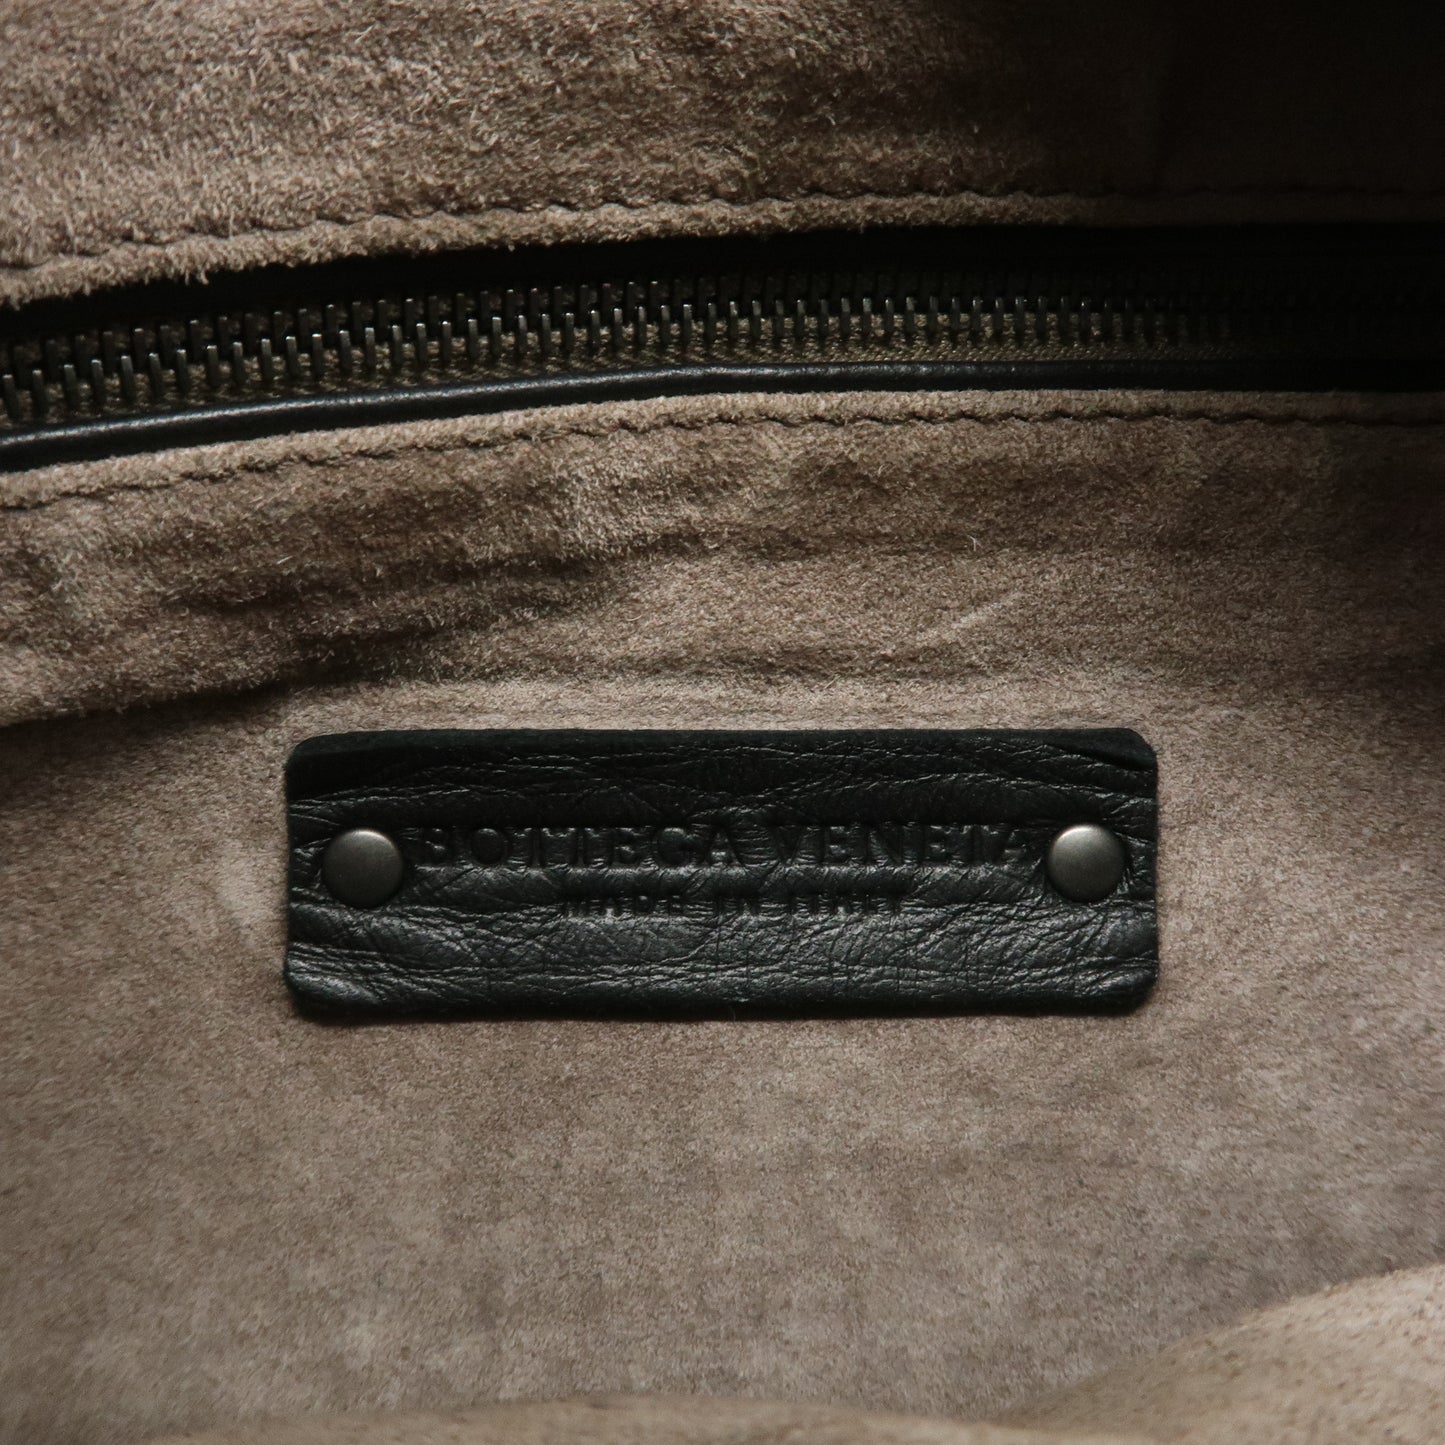 BOTTEGA VENETA Intrecciato Hobo Leather Shoulder Bag Black 115653